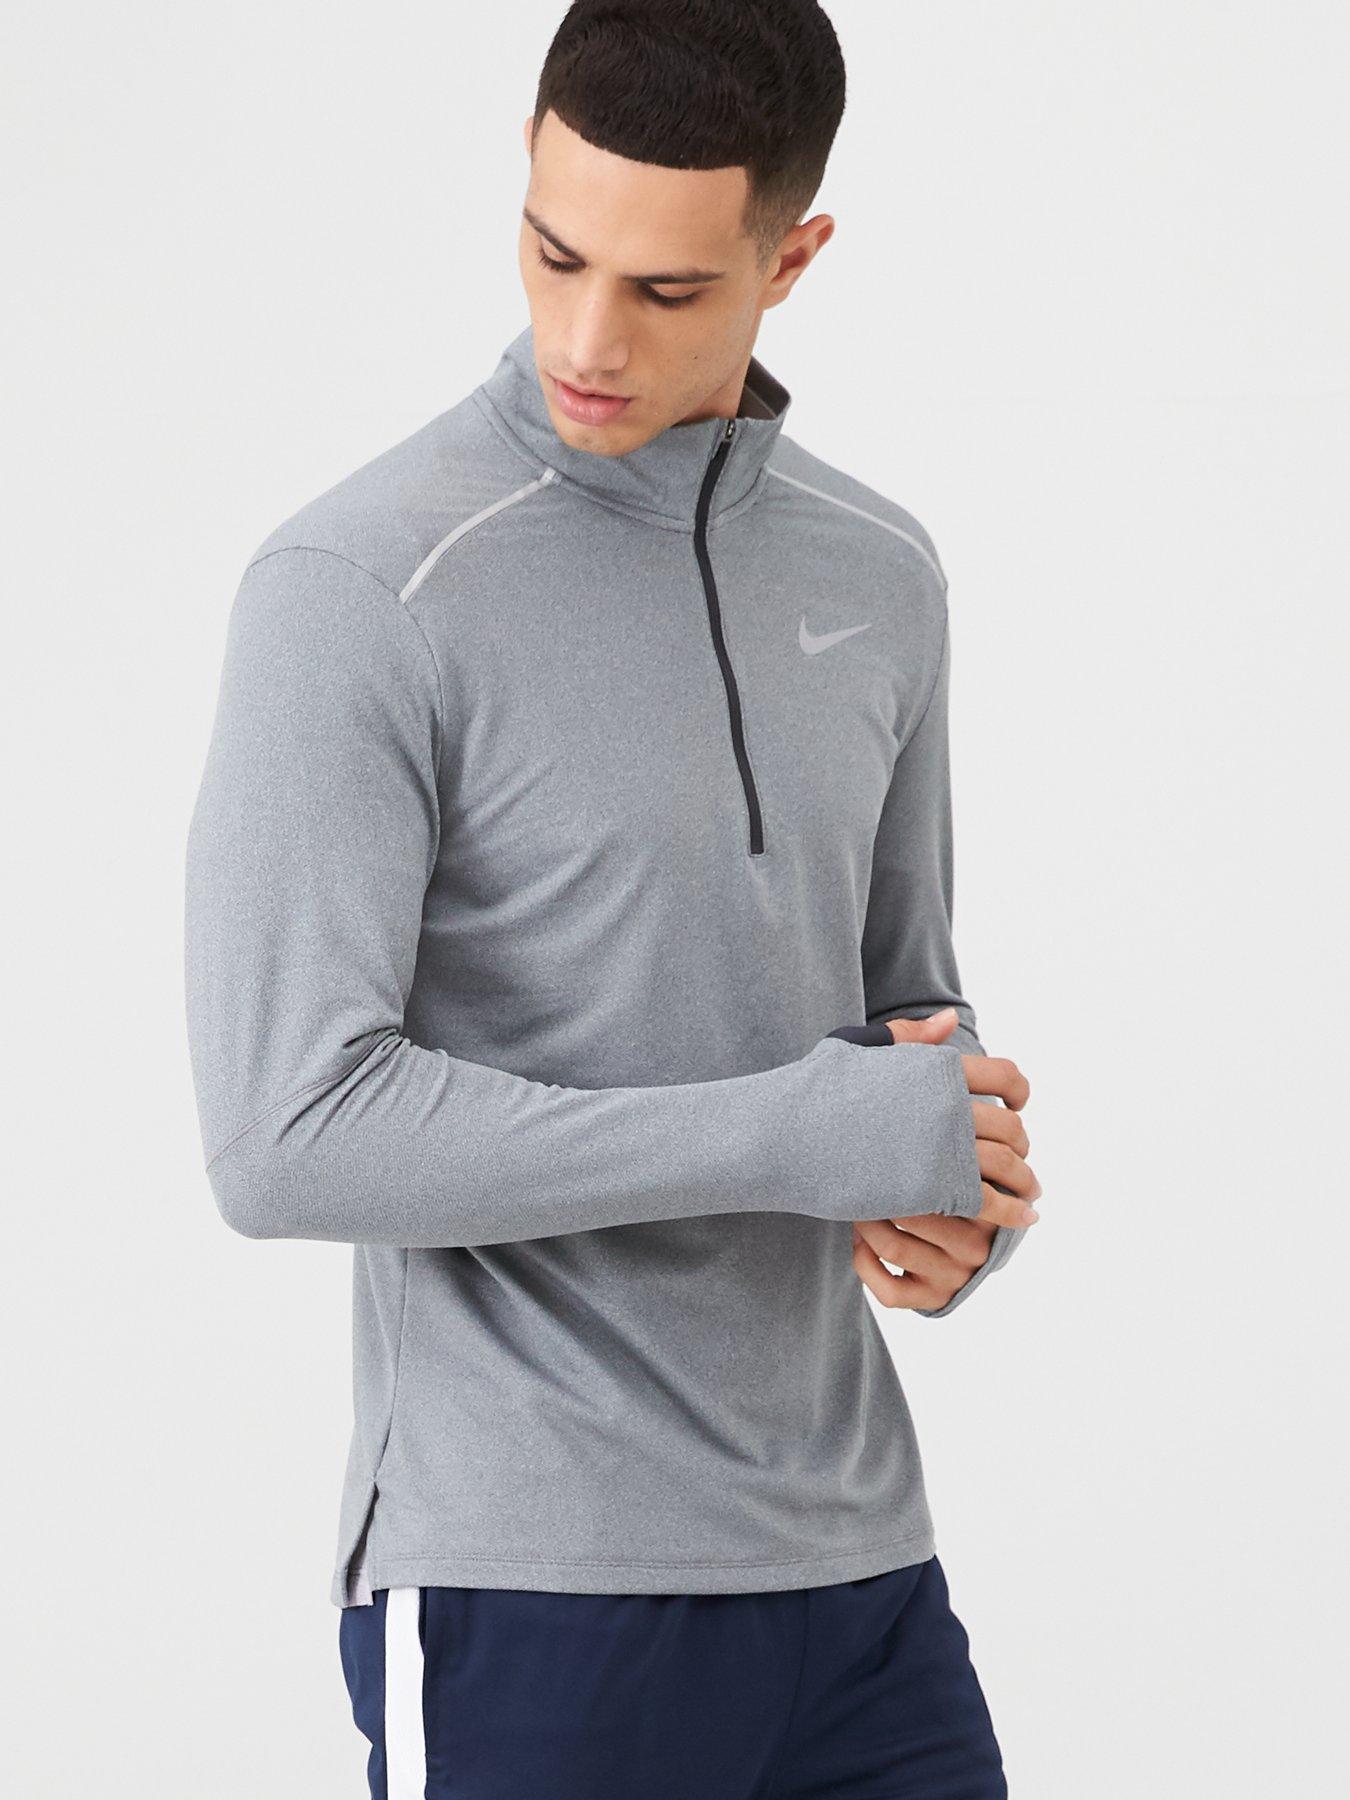 Nike Half Zip Running Top - Grey 